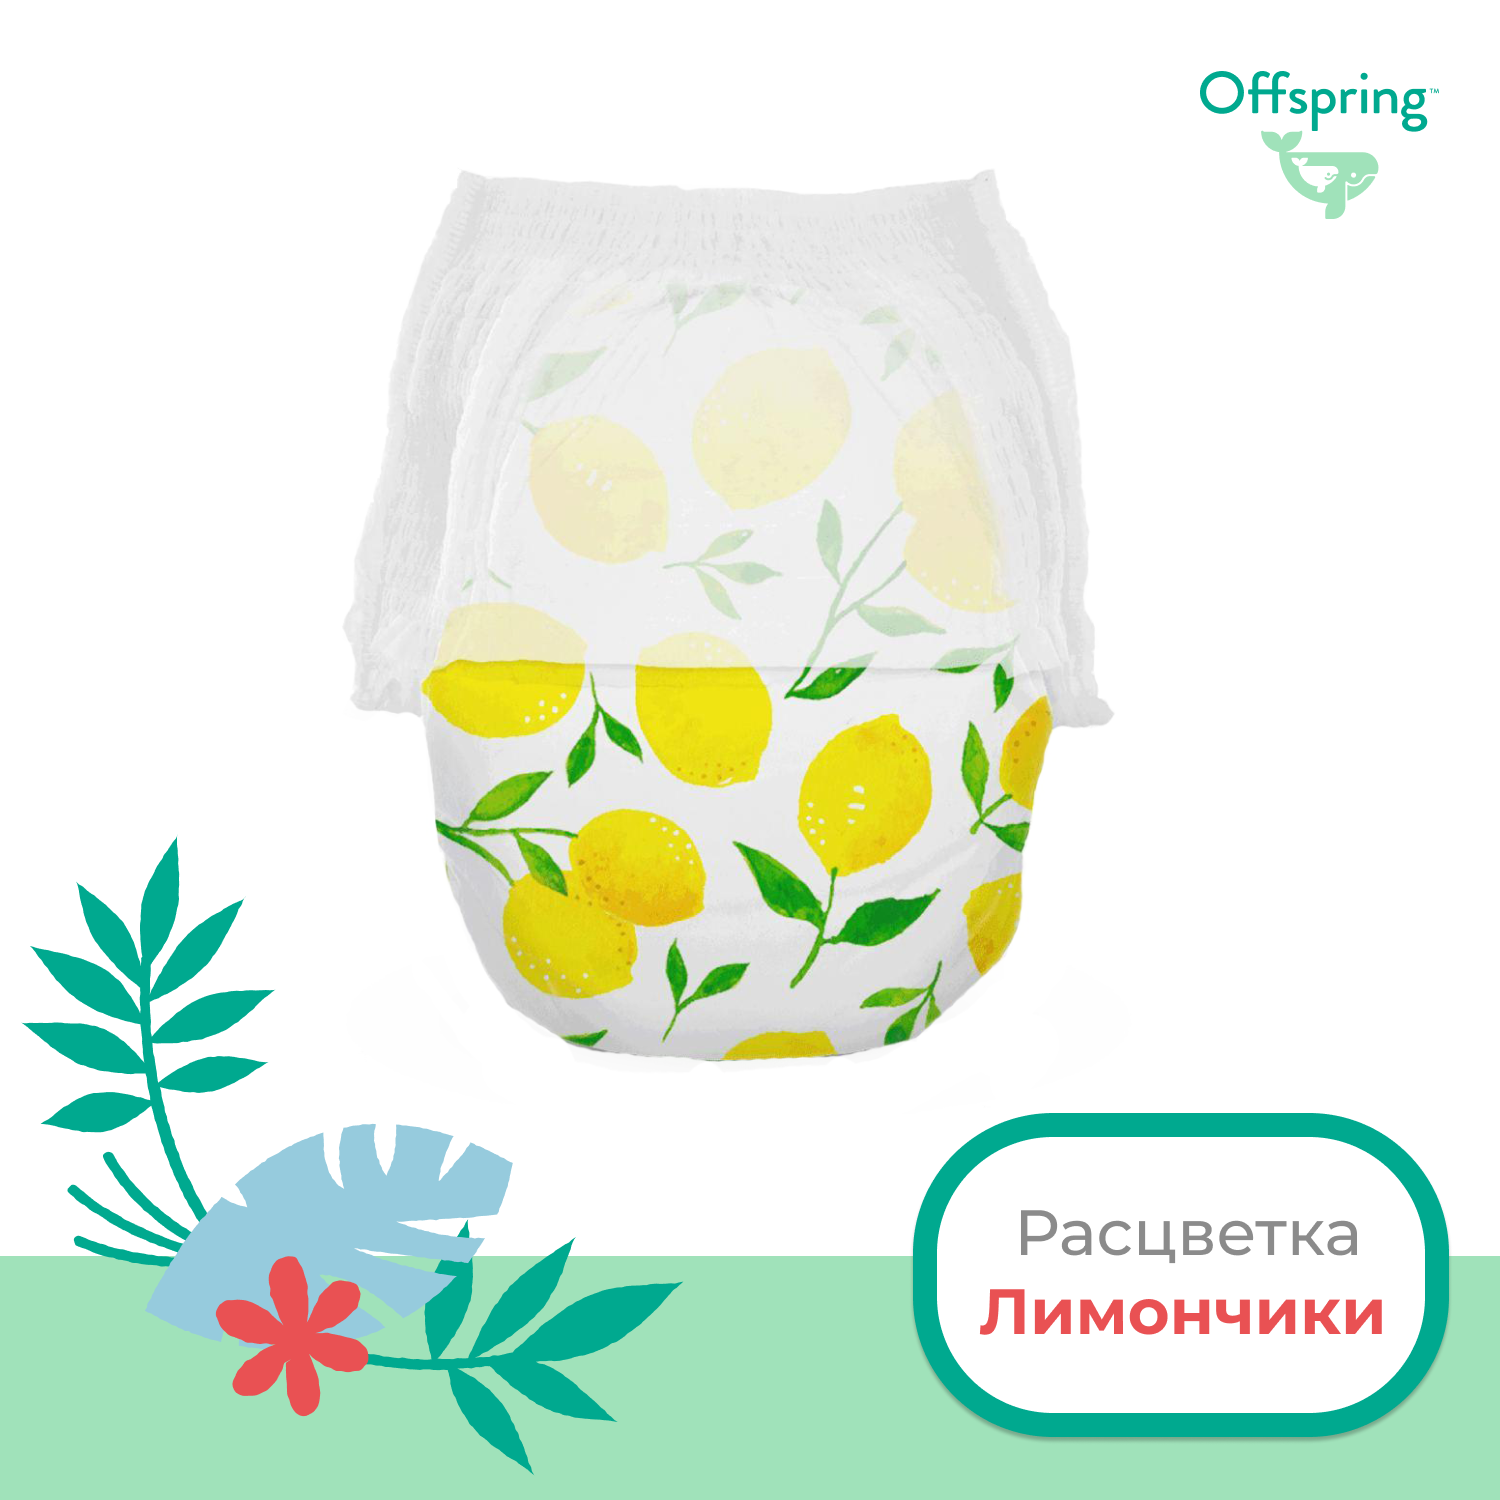 Трусики-подгузники Offspring L 9-14 кг 36 шт расцветка Лимоны - фото 2